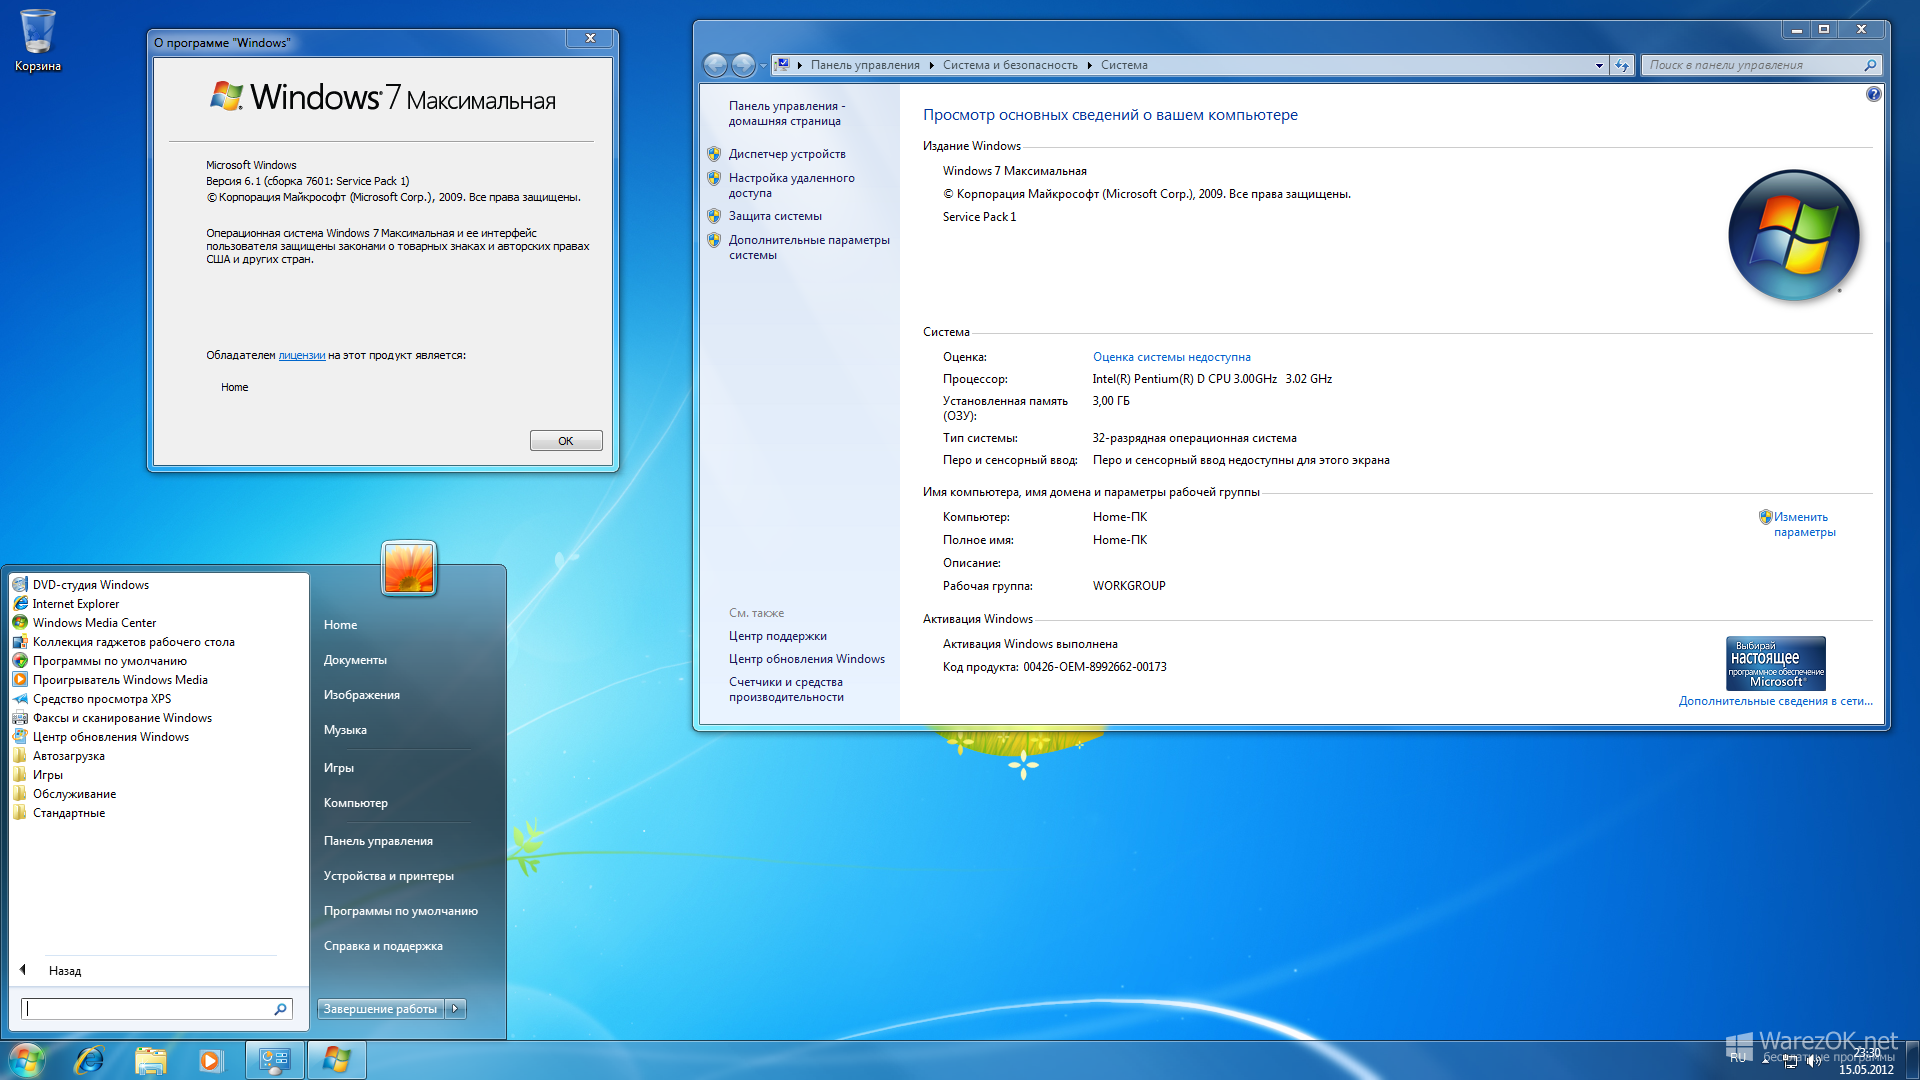 Microsoft windows 7 sp1 updated. Windows 7 максимальная. Виндовс 7 максимальная 2009. Windows 7 максимальная x64. Пакет обновления Windows 7.